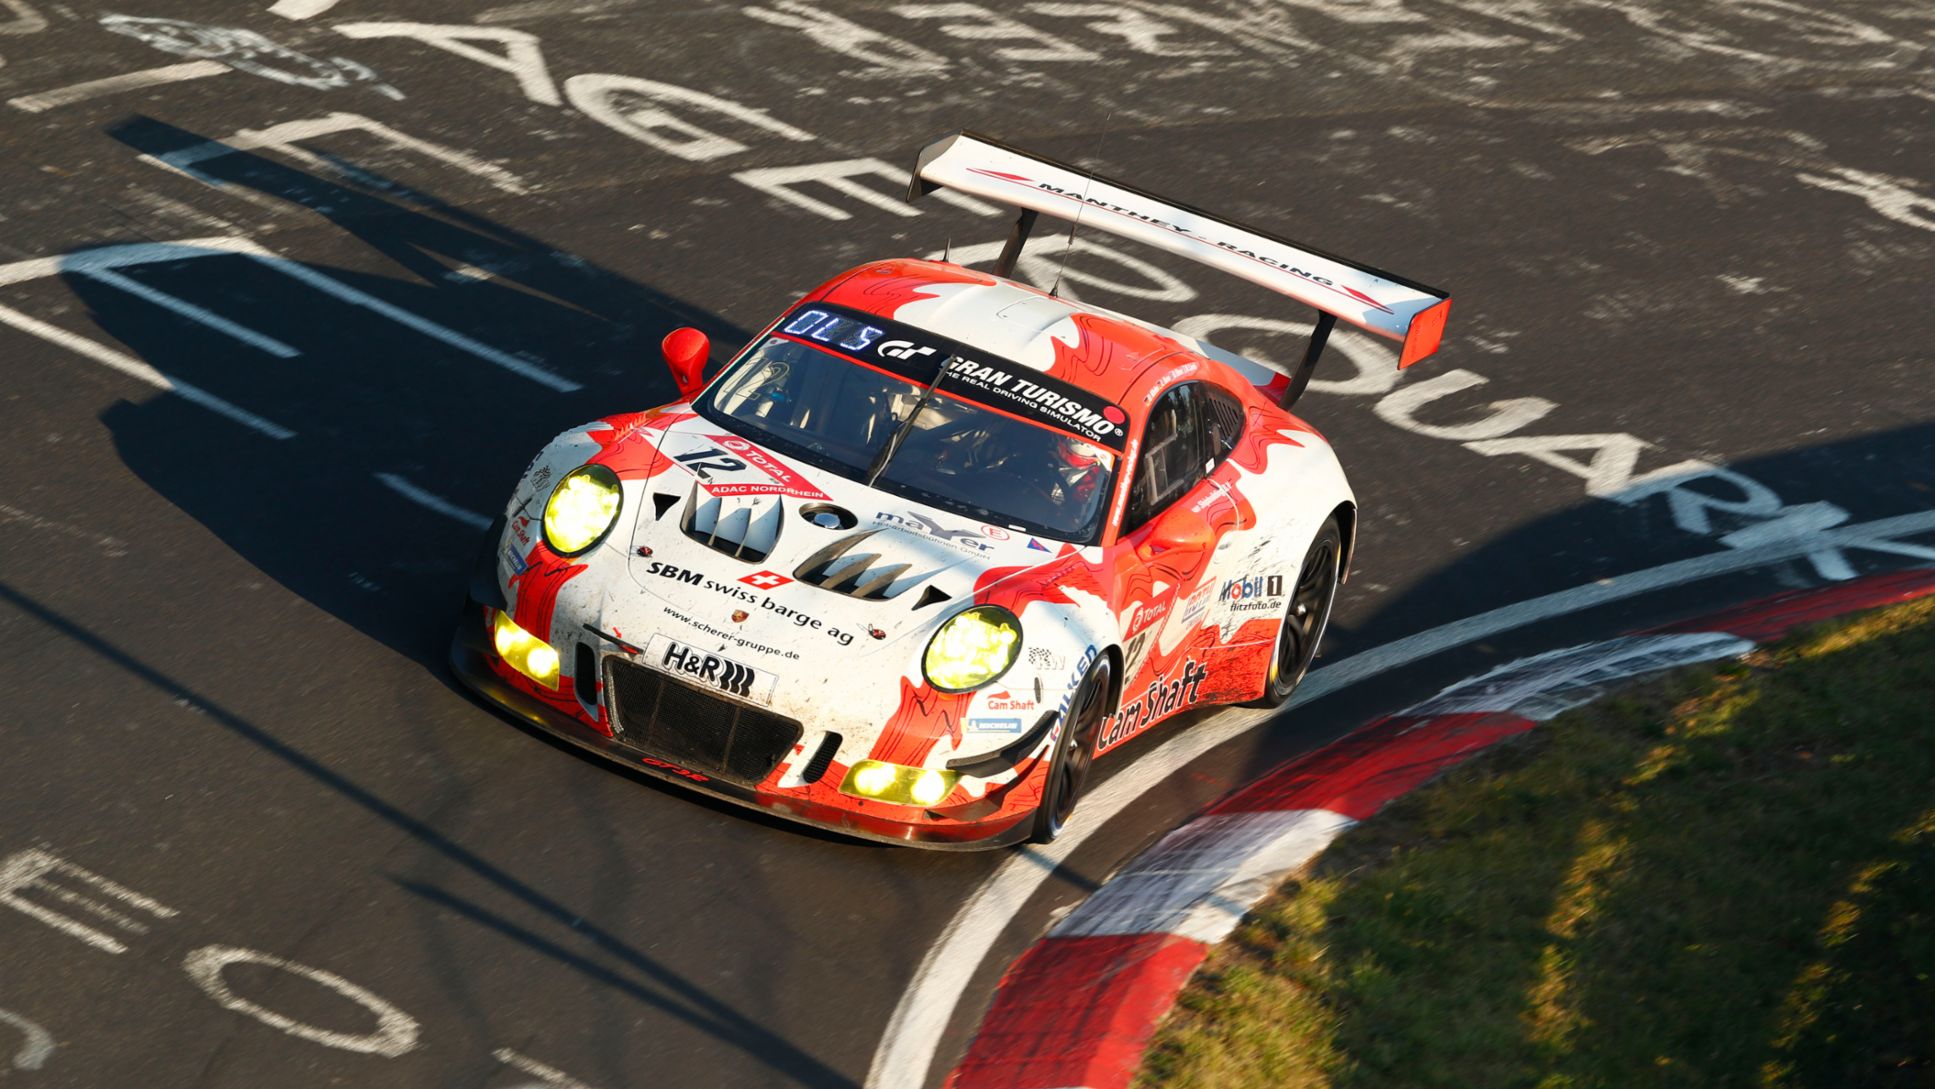 Porsche 911 GT3 R, Manthey-Racing (12), 24 Stunden Nürburgring, Rennen, 2019, Porsche AG